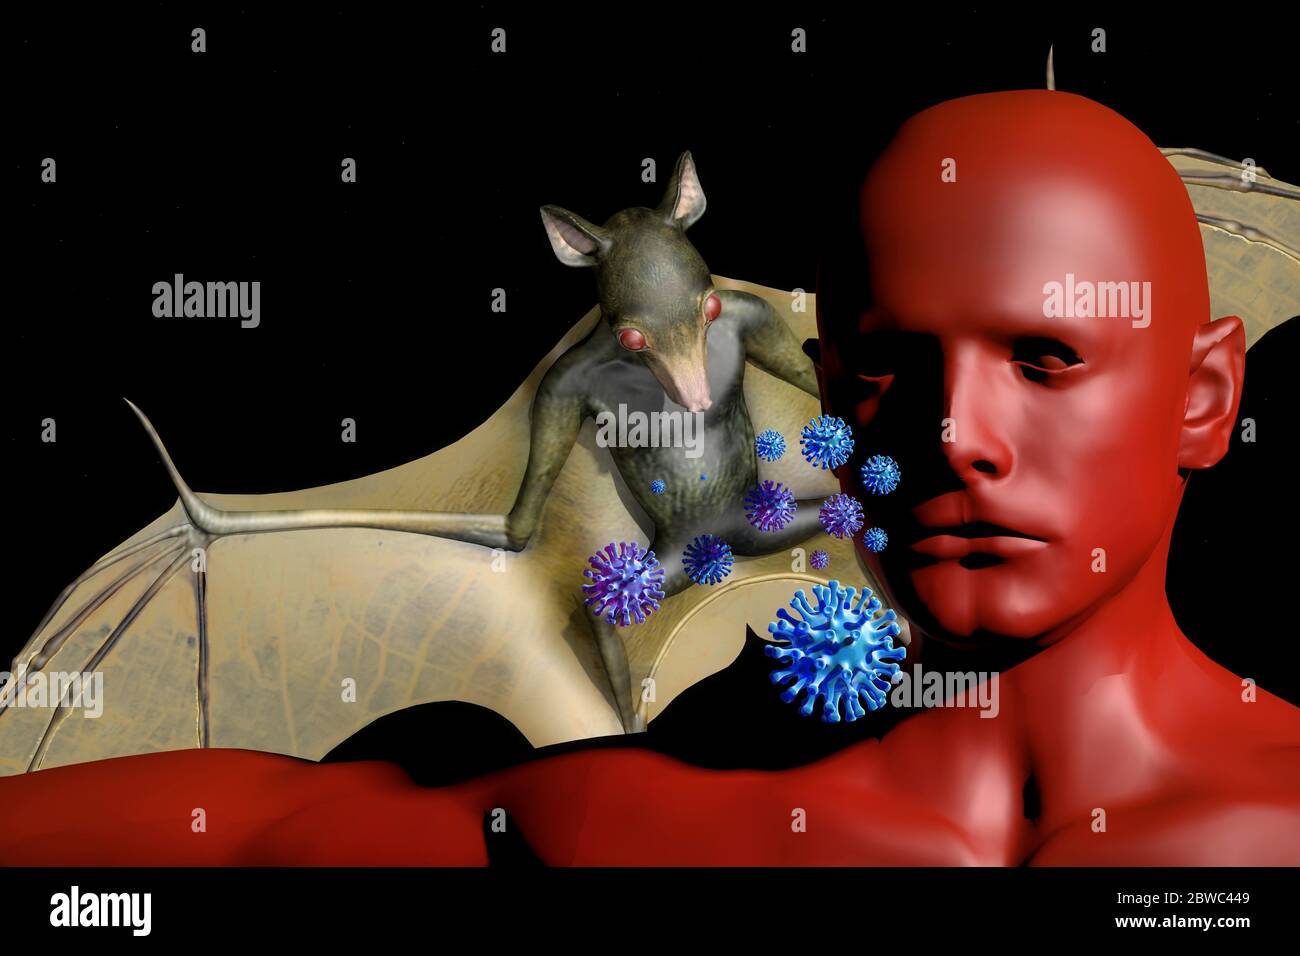 viele Viren wandern von der Tierwelt zum Menschen. Haeufig spielen Fledermaeuse dabei eine grosse Rolle - Symbolbild: CGI-Visualisierung: Coronavirus Stock Photo